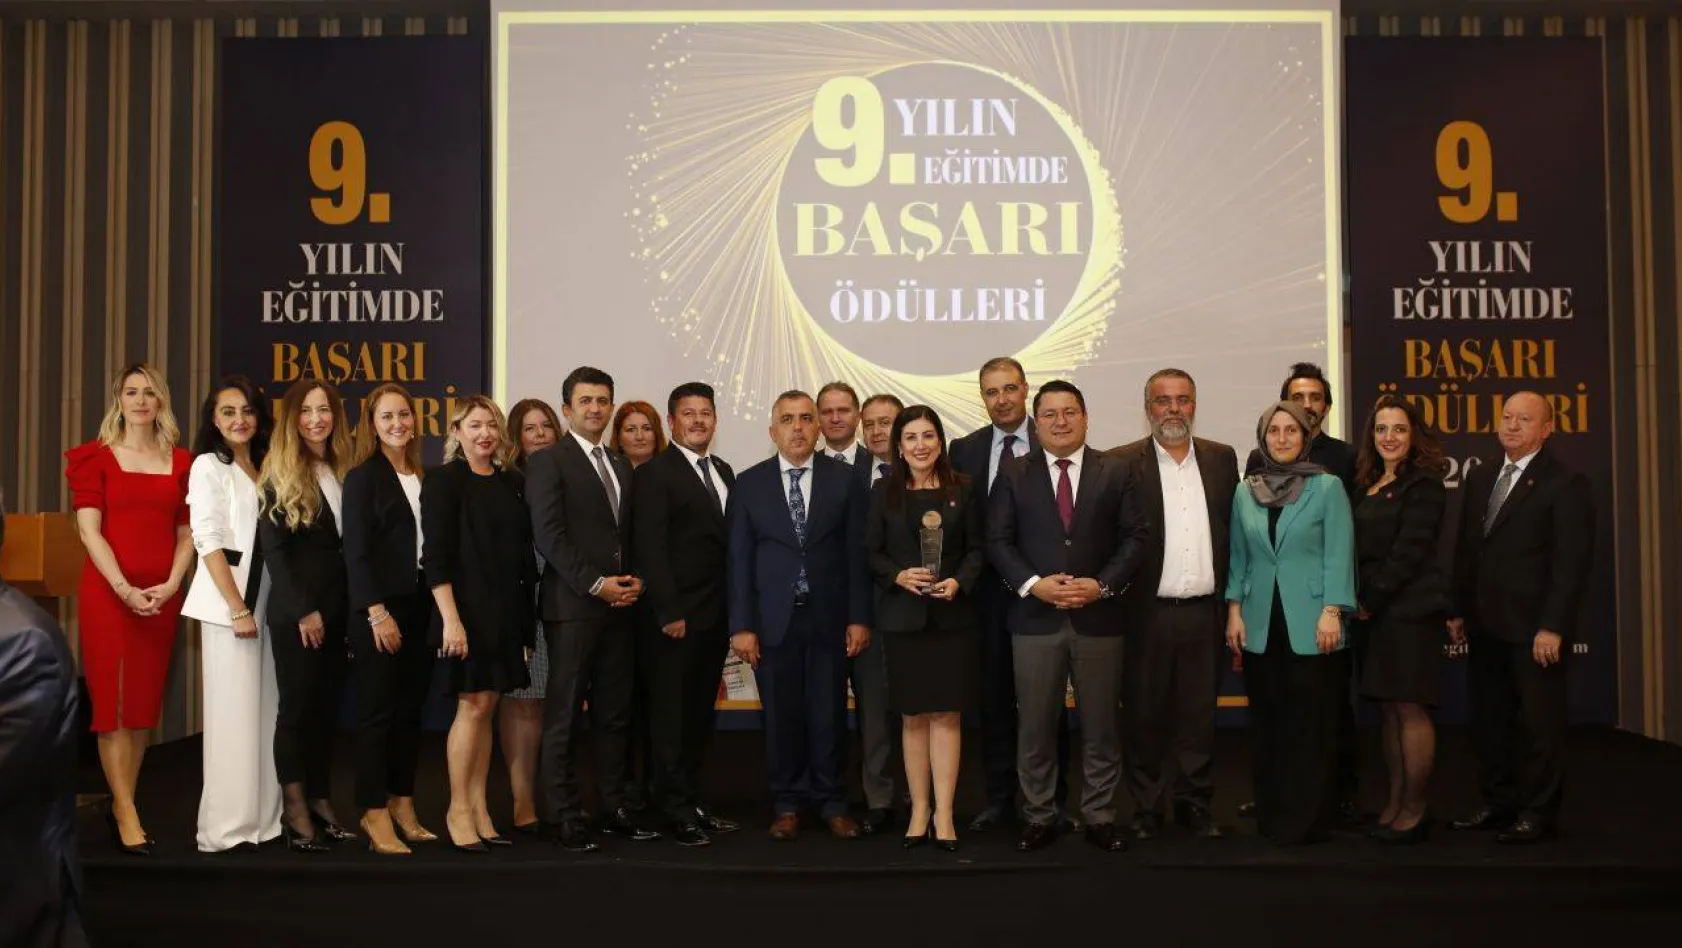 'Yılın Eğitimde Türkiye Markası' Ödülü Mektebim Koleji'nin